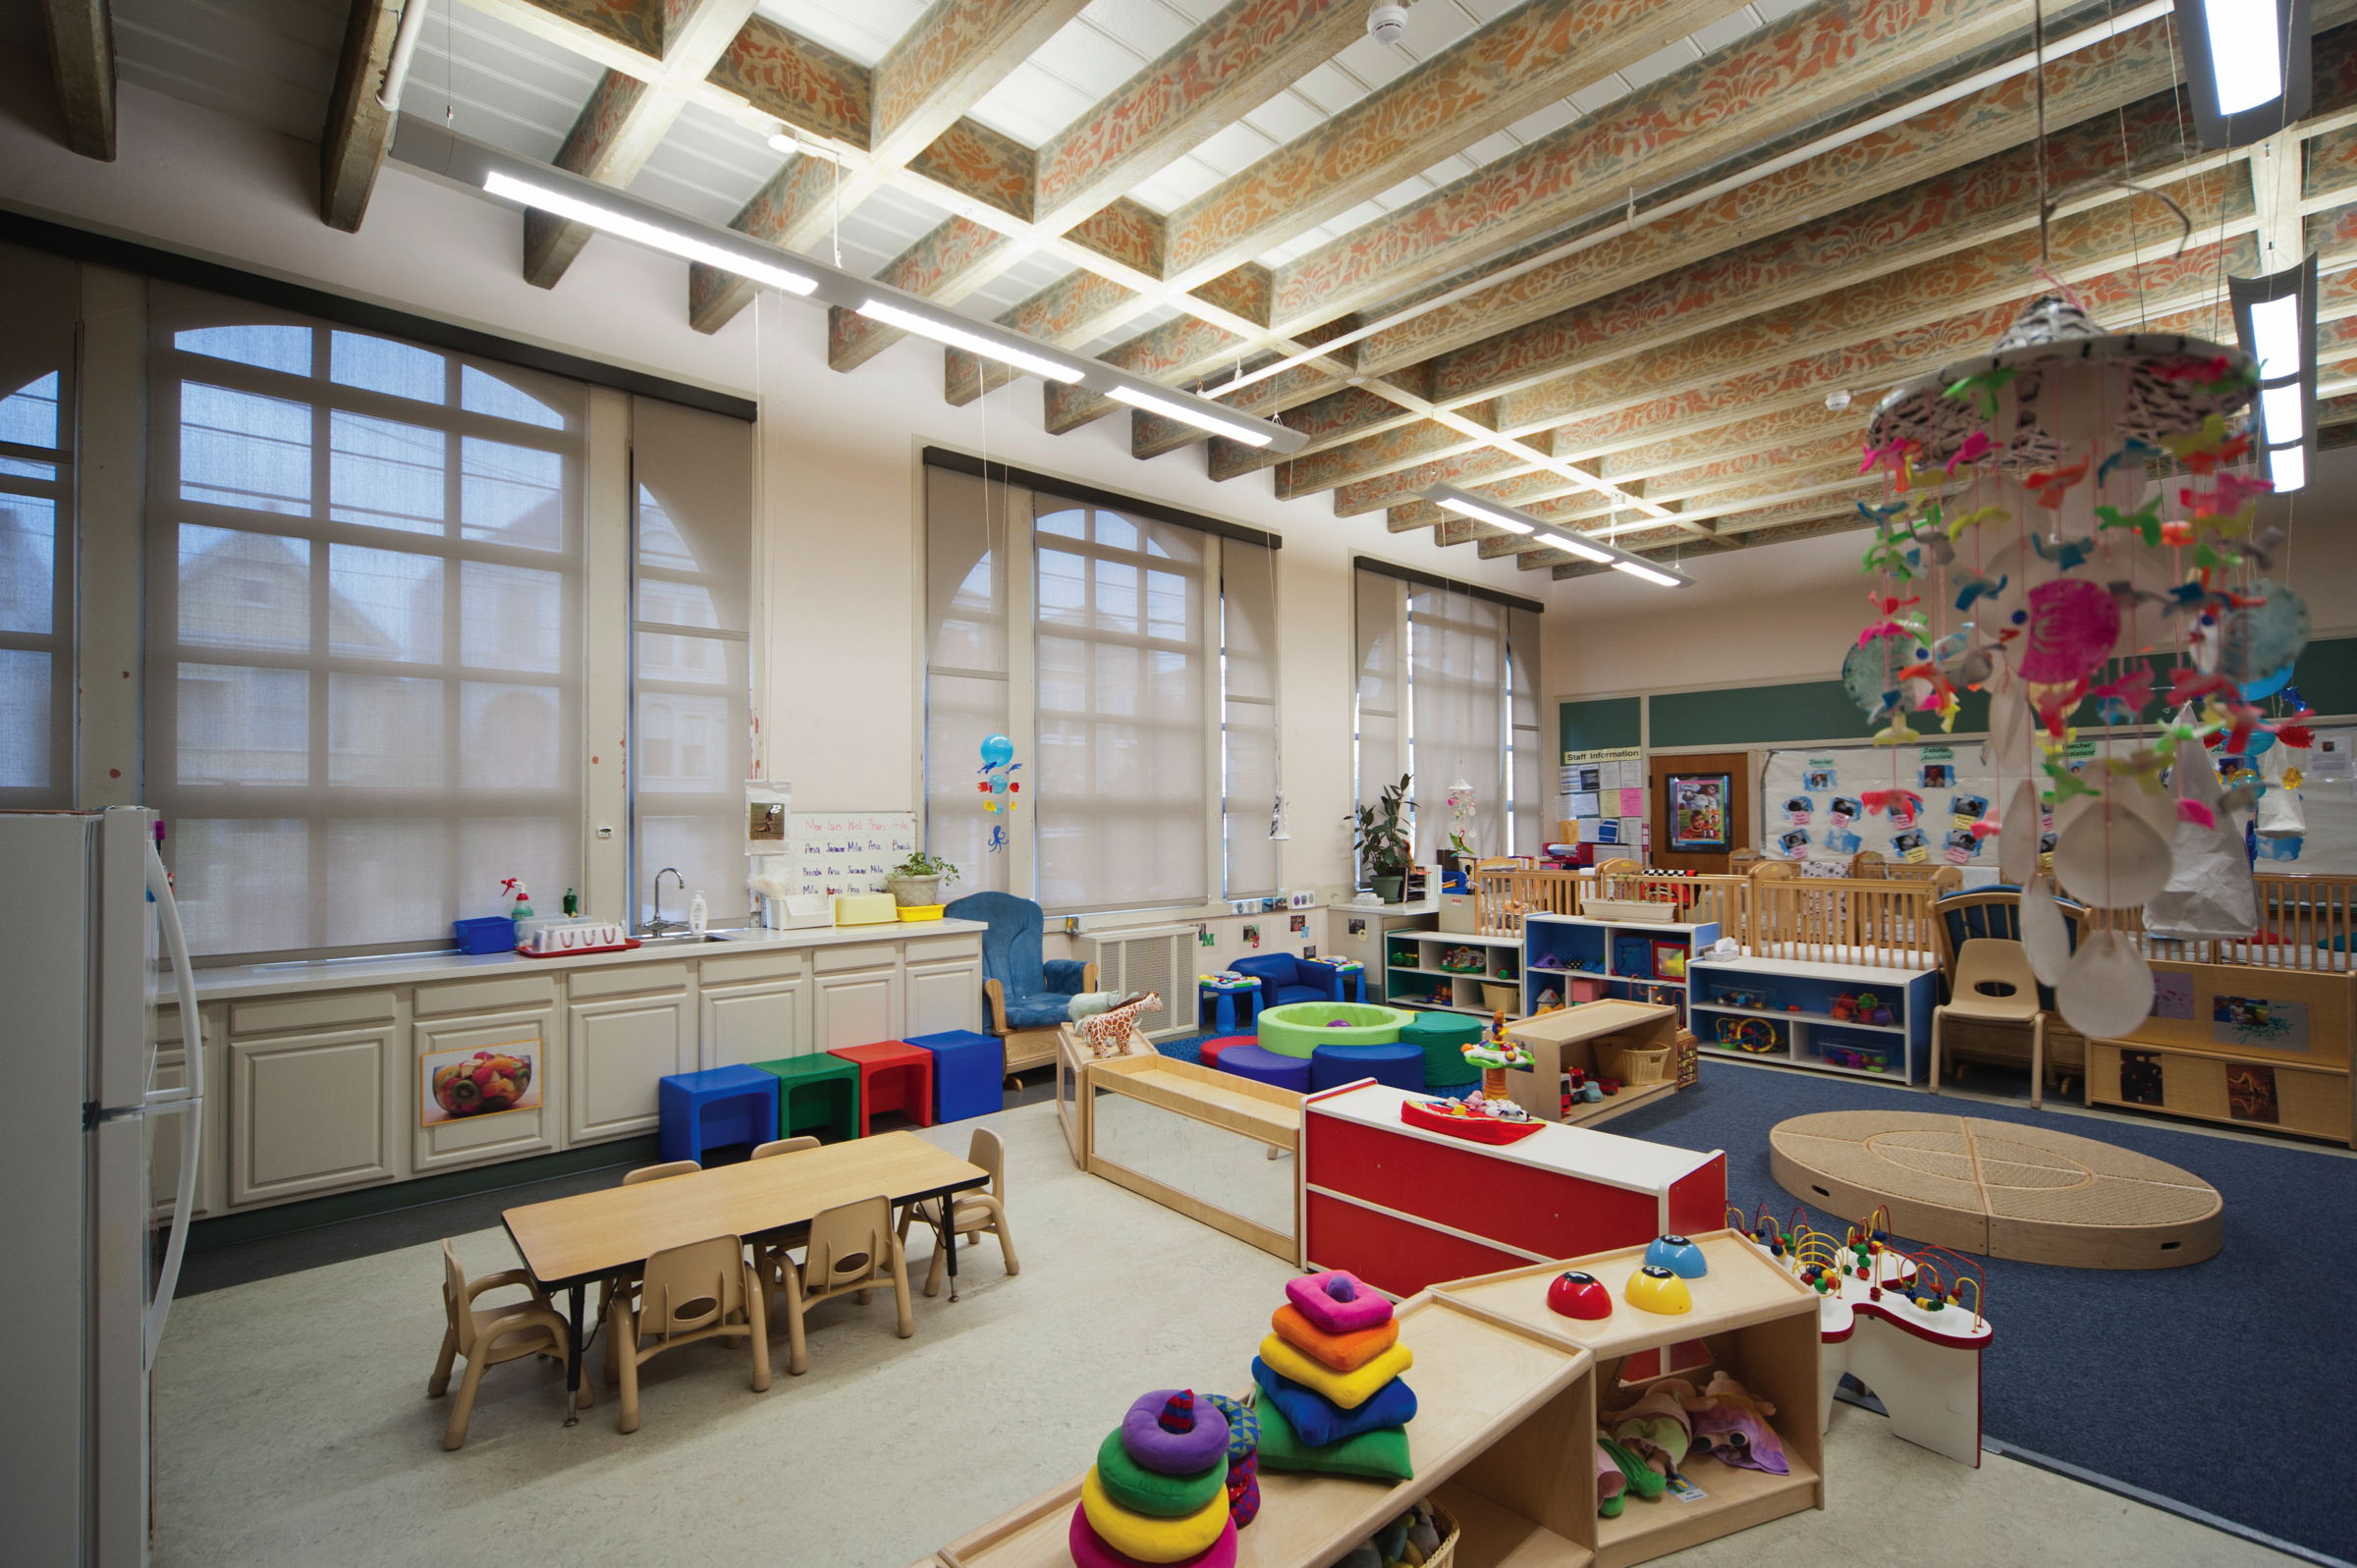 Preschool childcare area